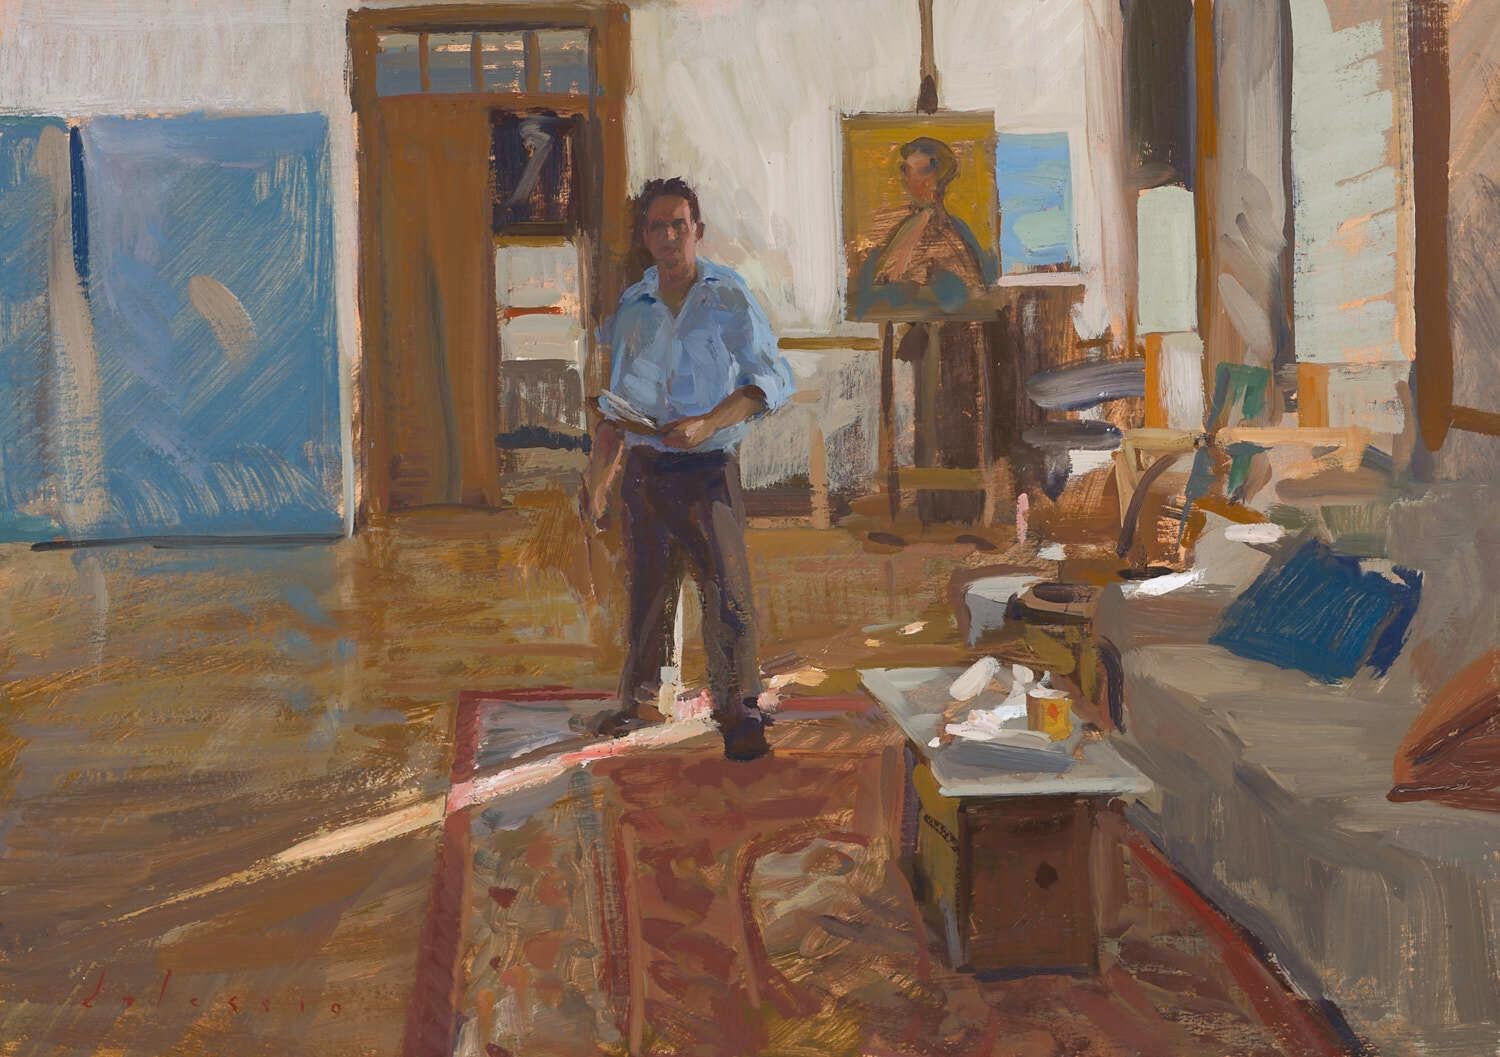 "Lockdown Self-Portrait" portrait réaliste contemporain de l'artiste dans son studio.